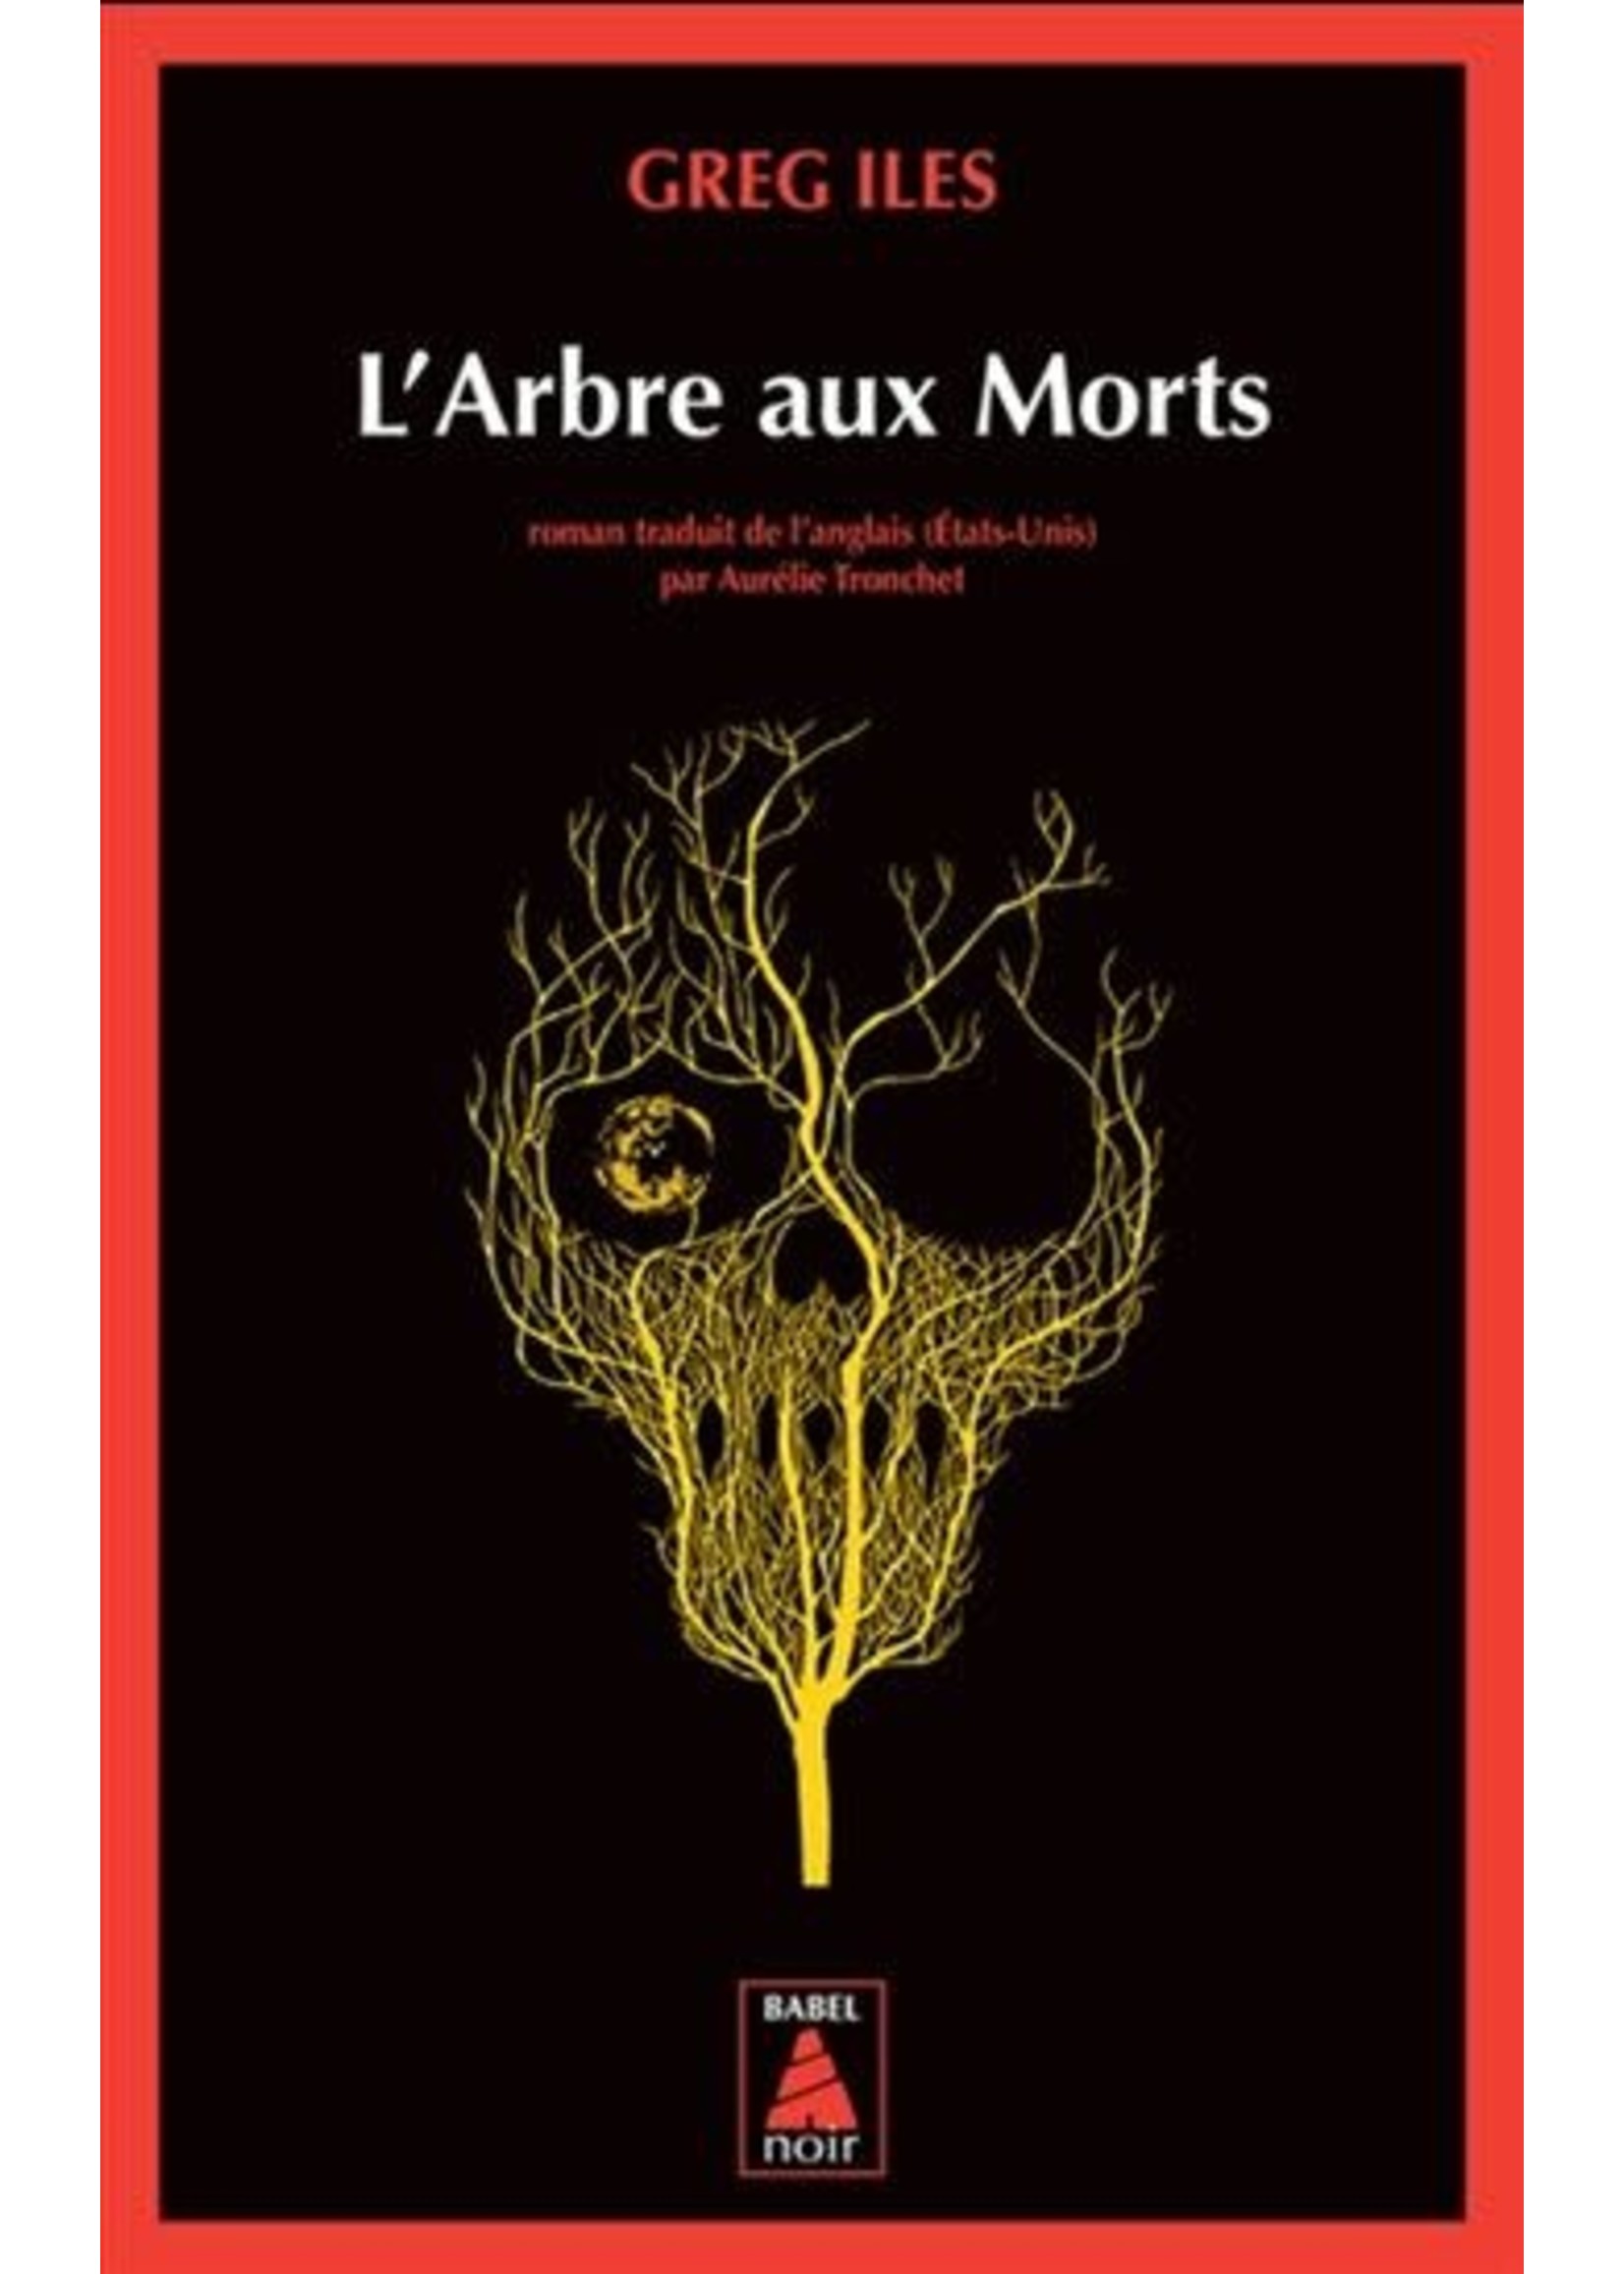 L'Arbre aux Morts by Greg Iles